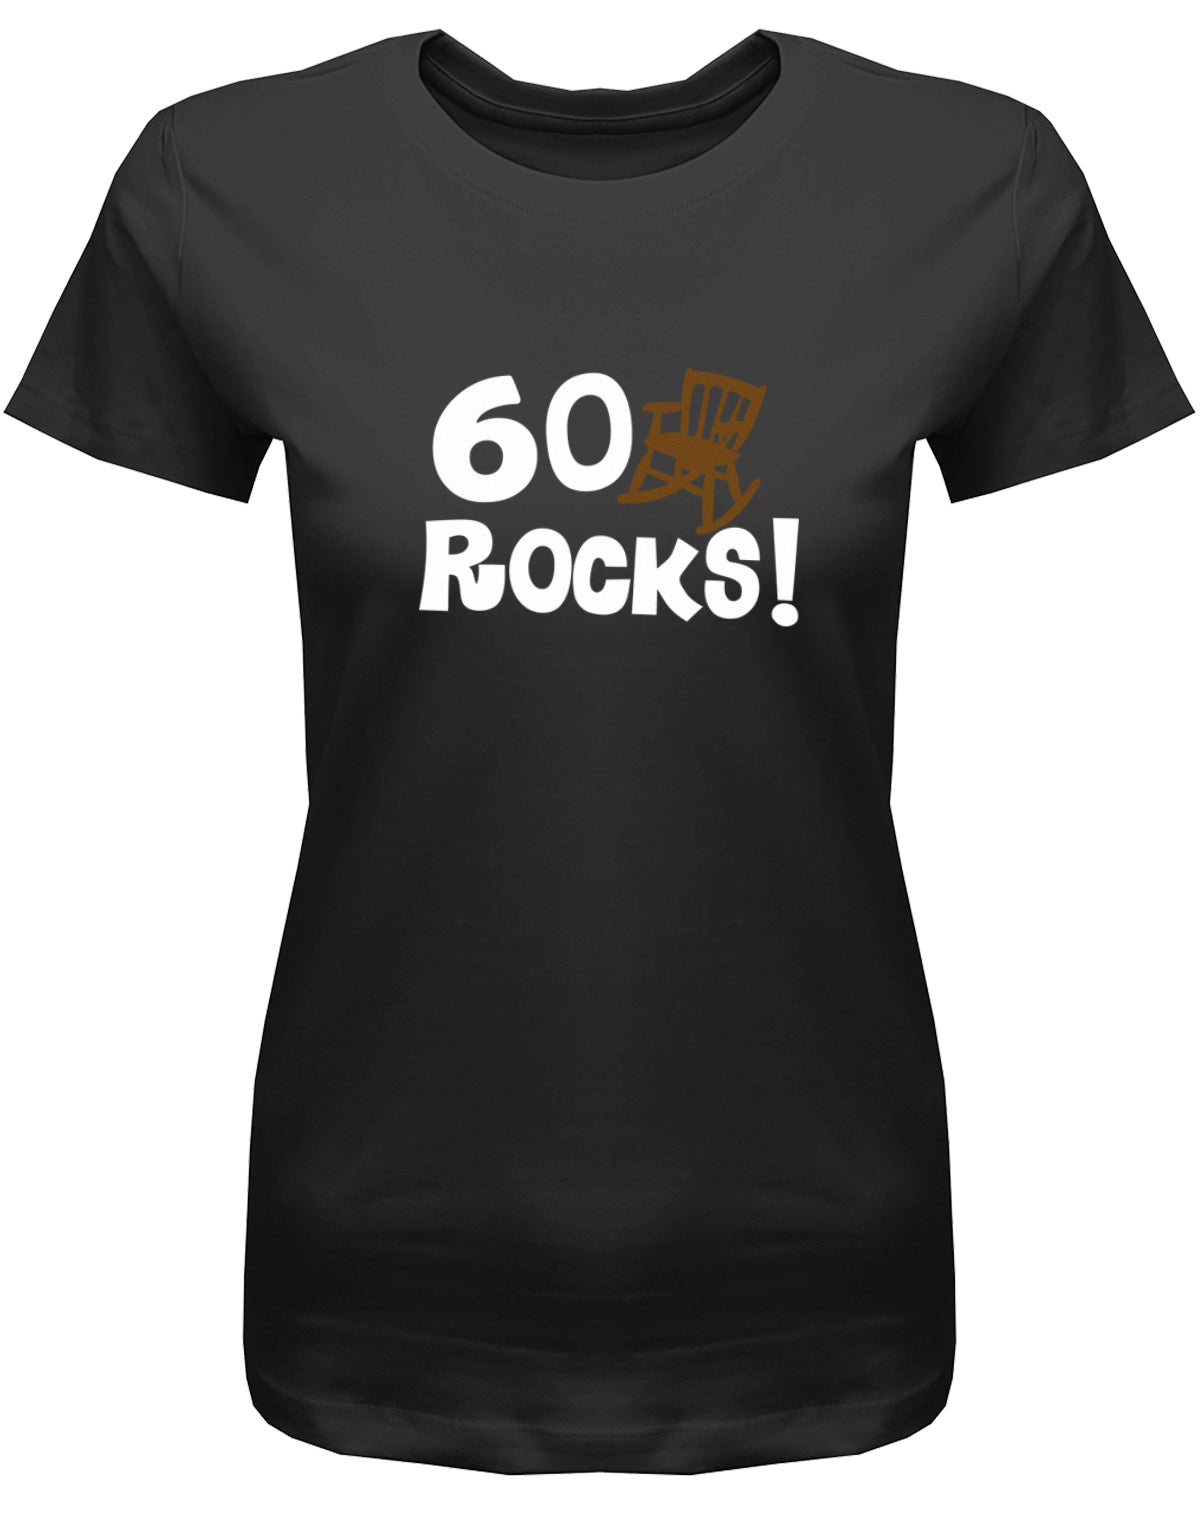 Lustiges T-Shirt zum 60 Geburtstag für die Frau Bedruckt mit 60 Rocks Schaukelstuhl. Schwarz